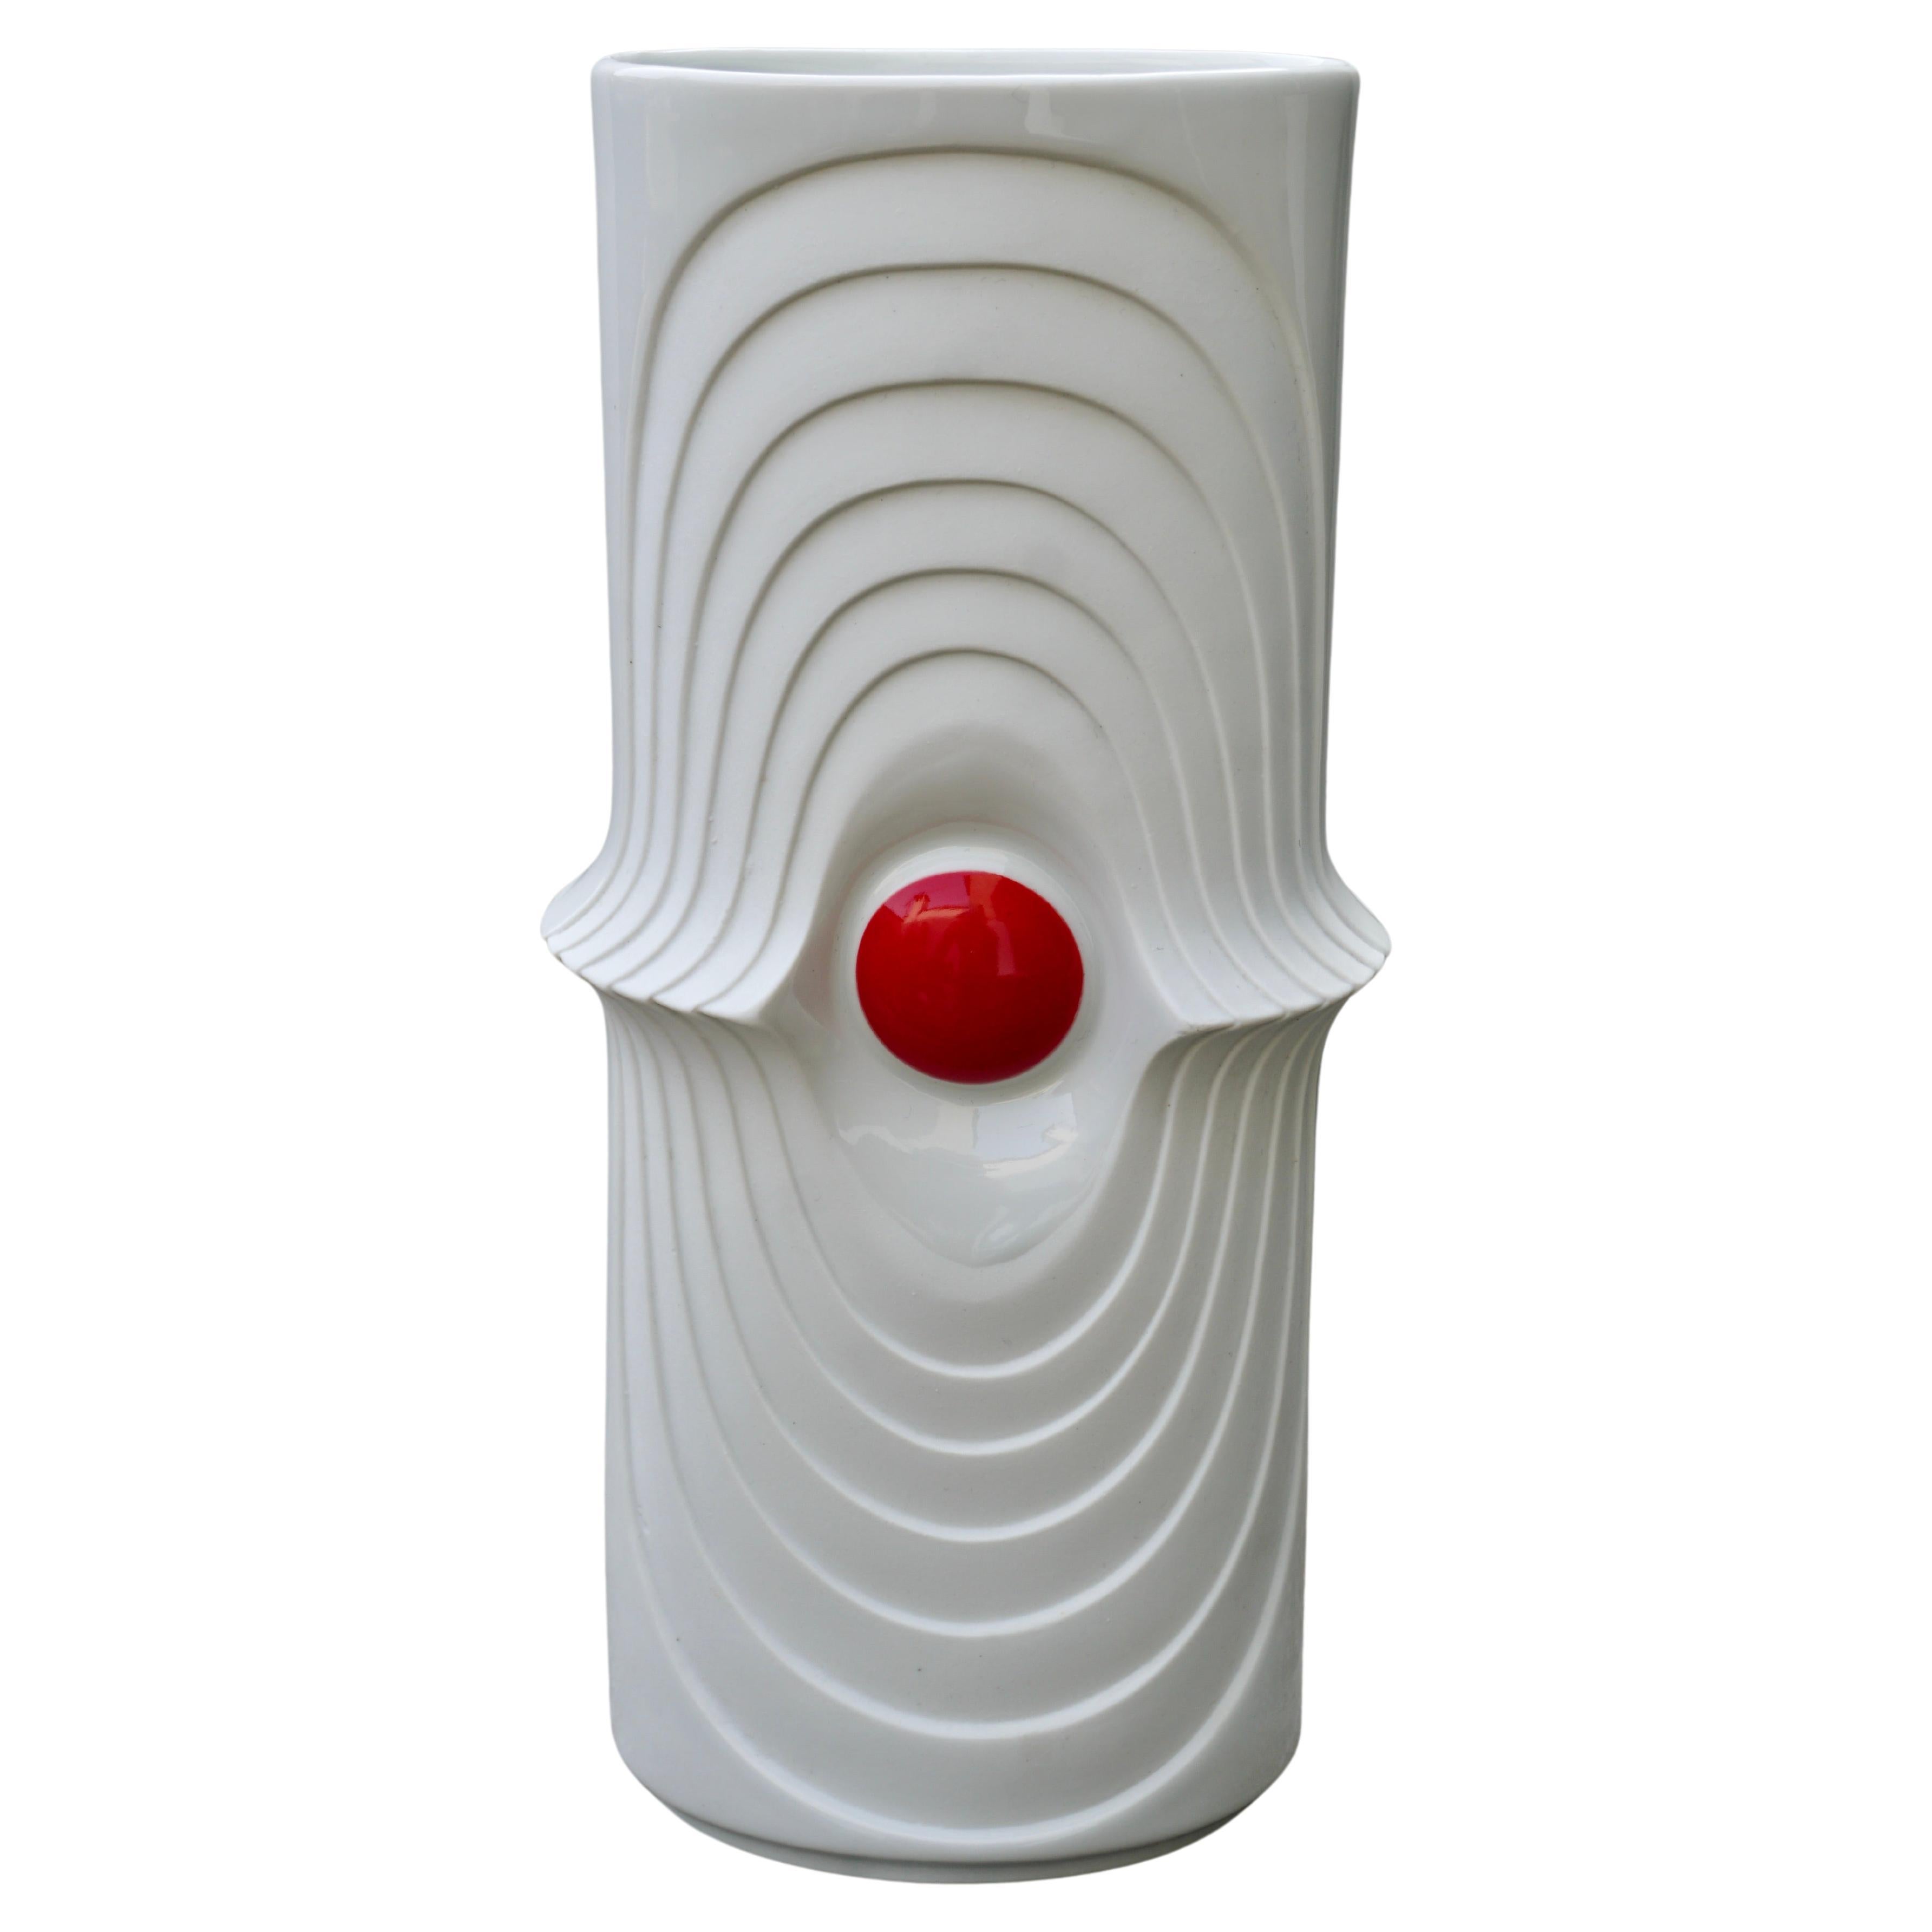 Vase en porcelaine Royal KPM Bavaria Porzellan fait à la main en Allemagne.

Ce vase vintage original d'OP Art of Vintage a été produit dans les années 1970 en Allemagne. Il est fabriqué en porcelaine avec une surface abstraite formée par OP Art. Le